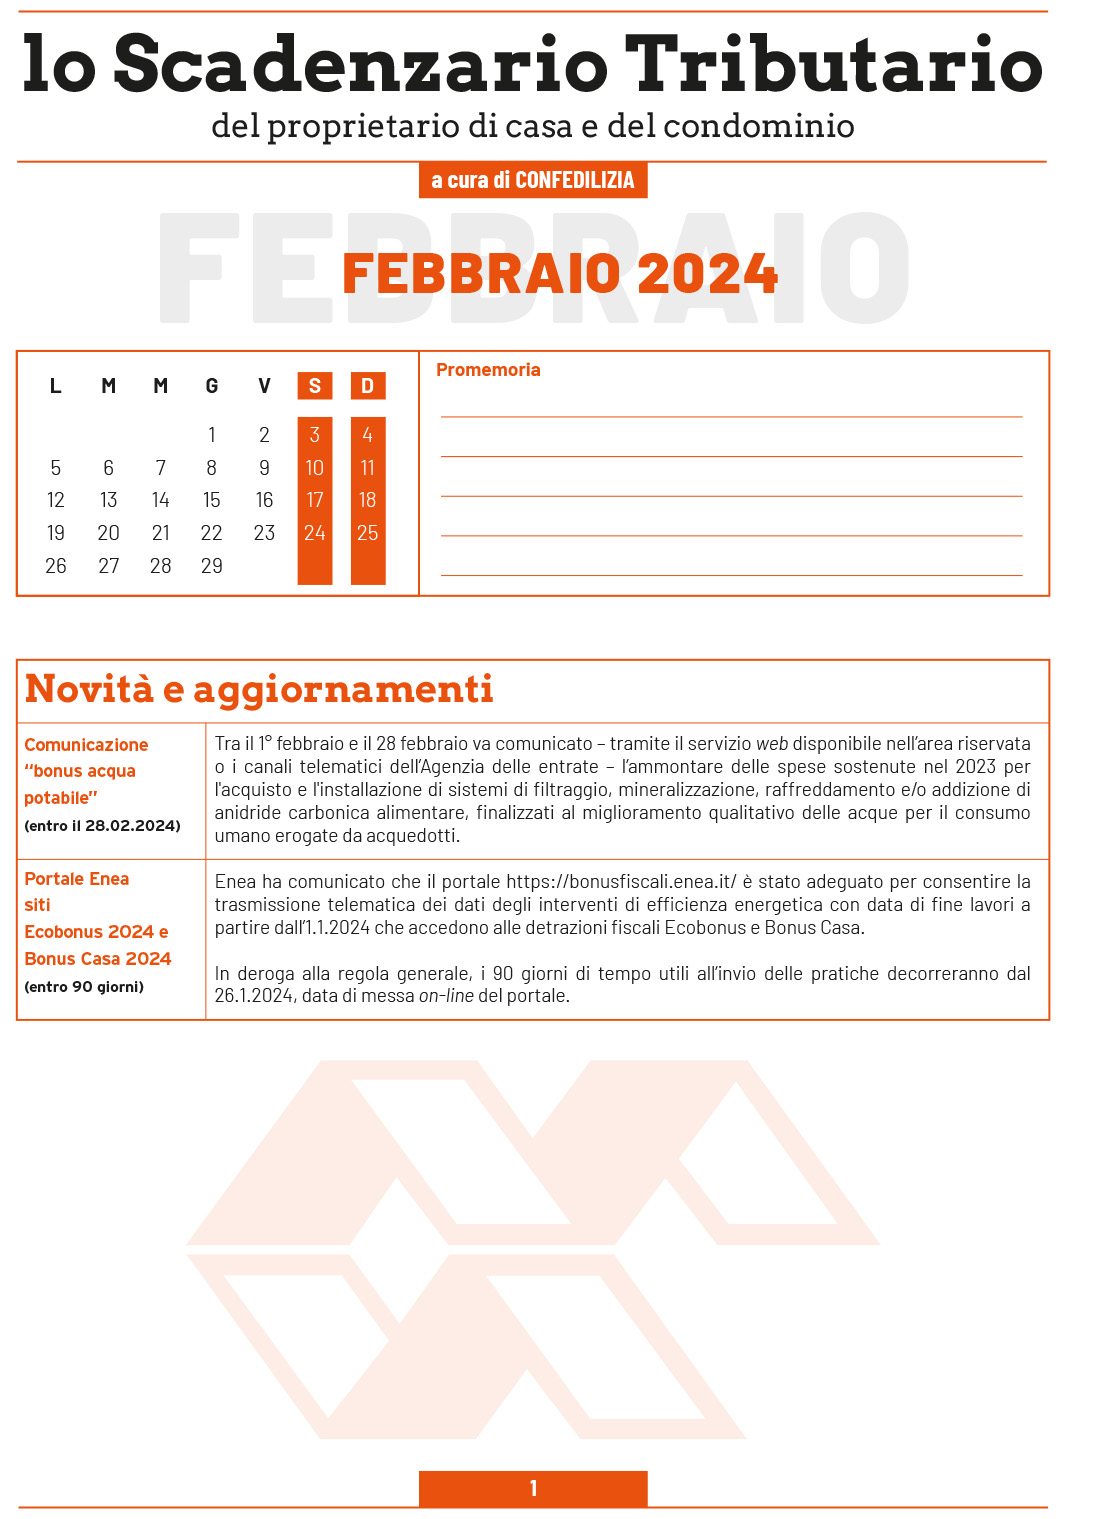 SCADENZARIO TRIBUTARIO FEBBRAIO 2024 (9 pagg.)-1